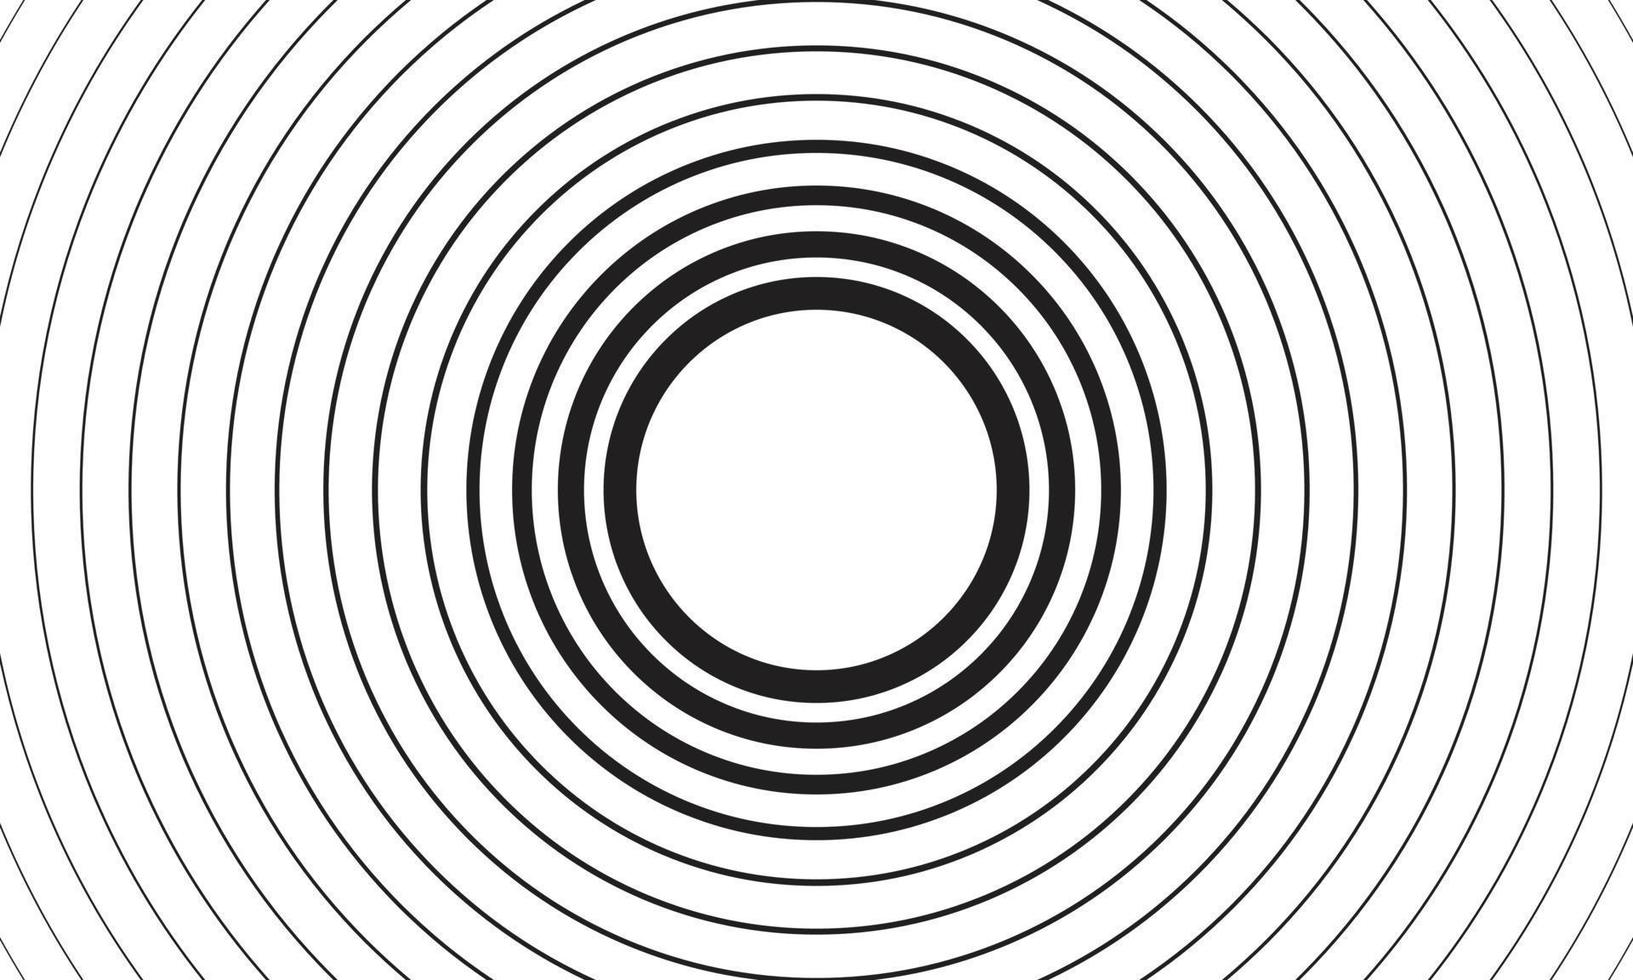 geometrisches Radialelement. abstraktes konzentrisches, radiales geometrisches Motiv schwarz-weißer konzentrischer Linienkreishintergrund. Wasch- und Sturmkonzept oder einfache Vektorillustration des Welleneffekts vektor